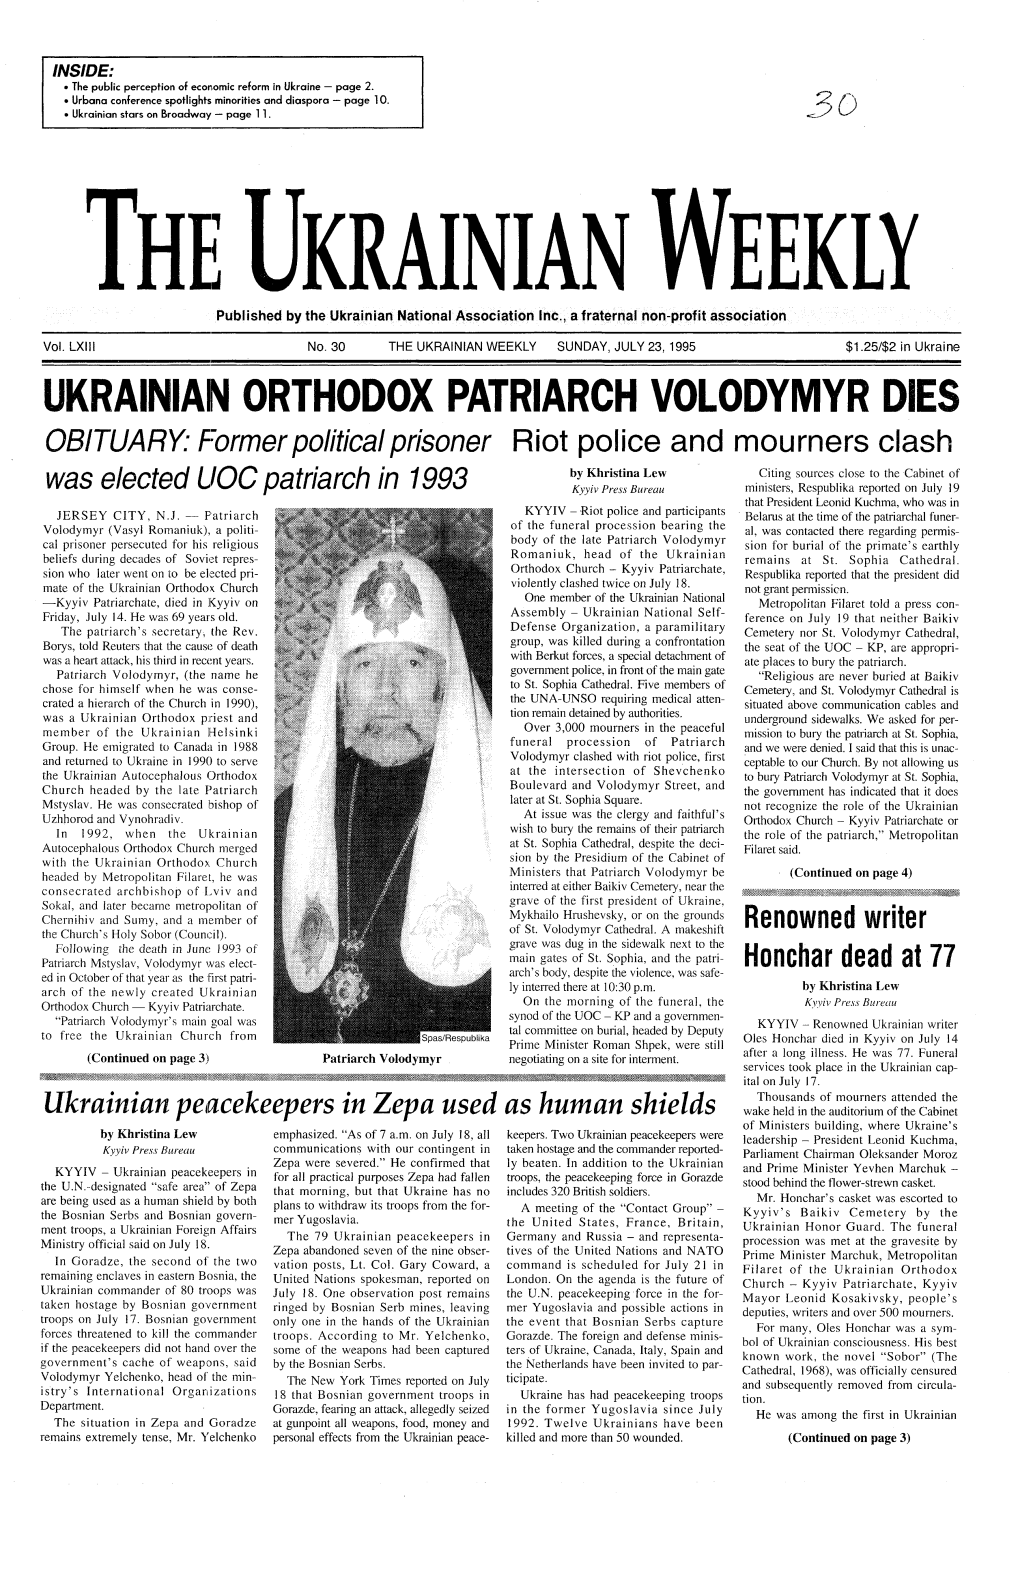 The Ukrainian Weekly 1995